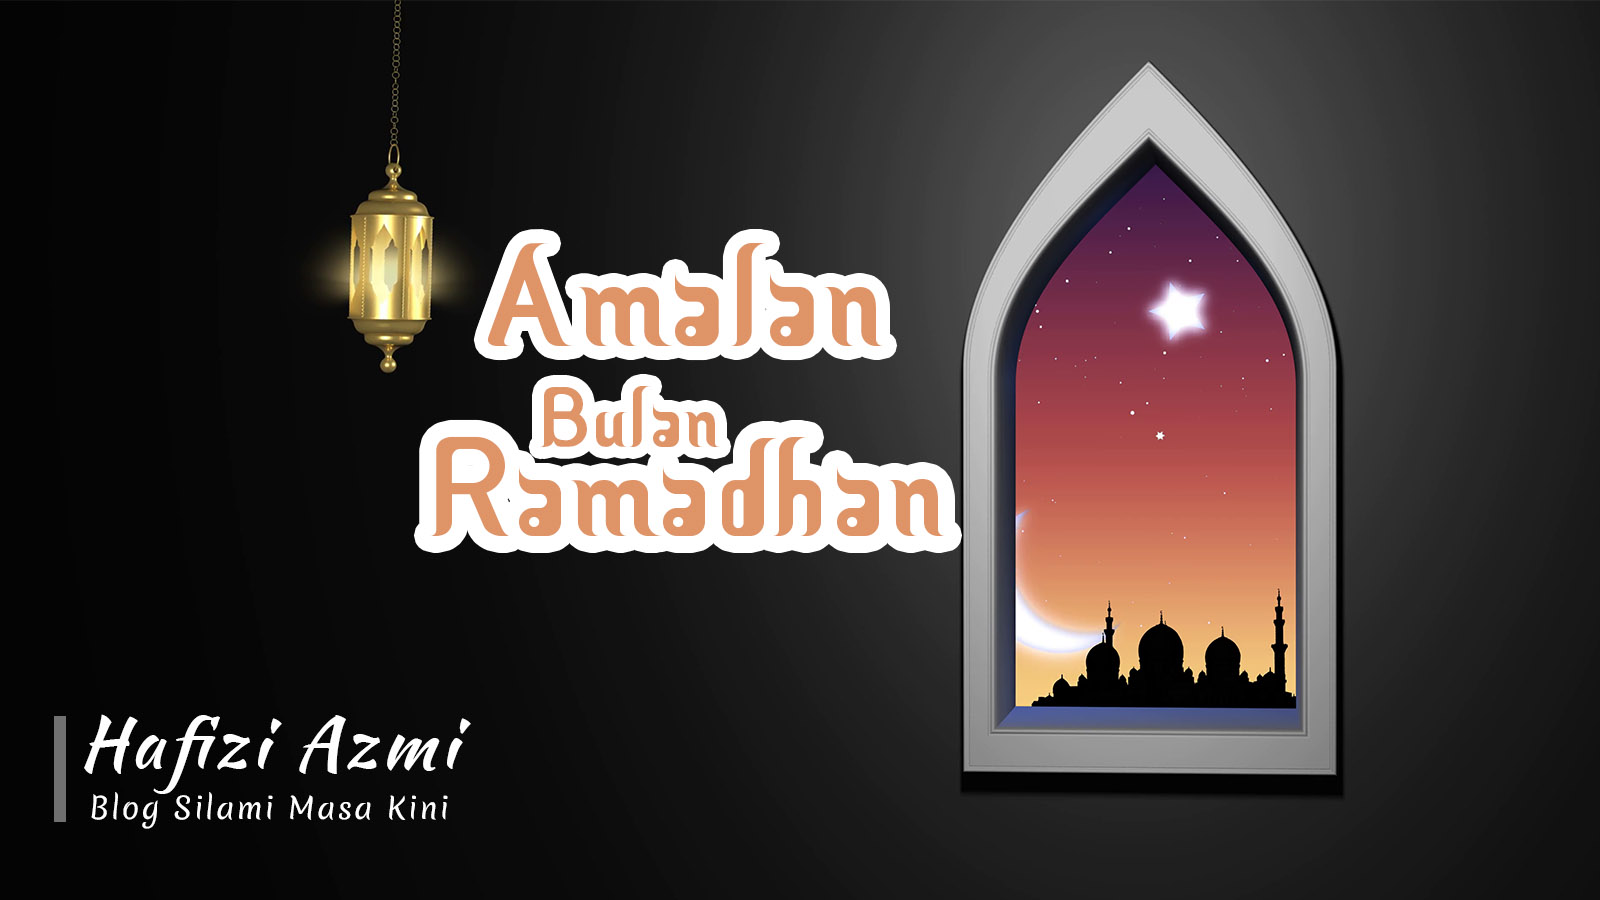 Amalan di bulan ramadhan